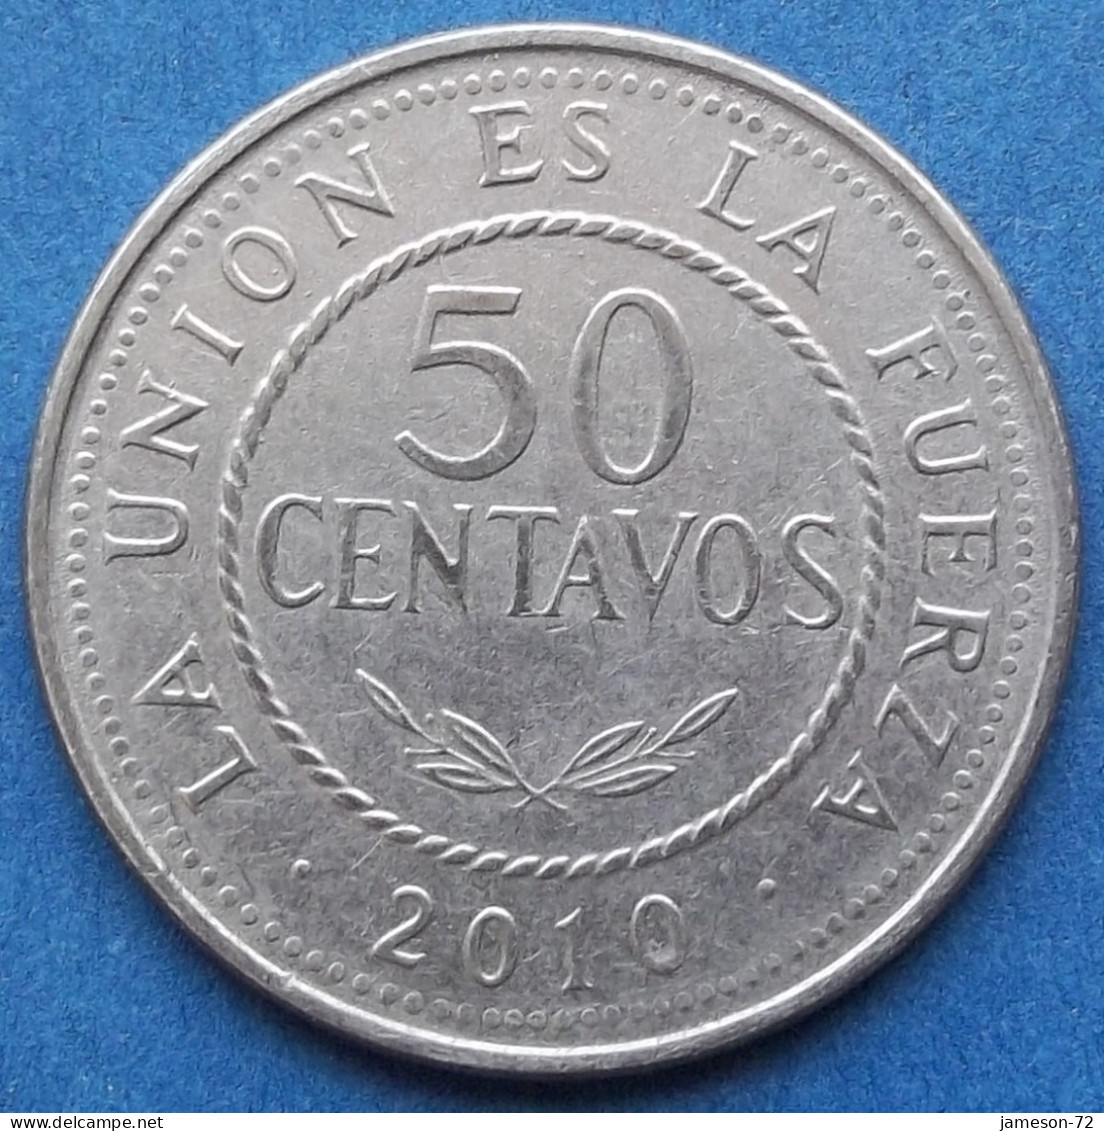 BOLIVIA - 50 Centavos 2010 KM# 216 Monetary Reform (1987) - Edelweiss Coins - Bolivia